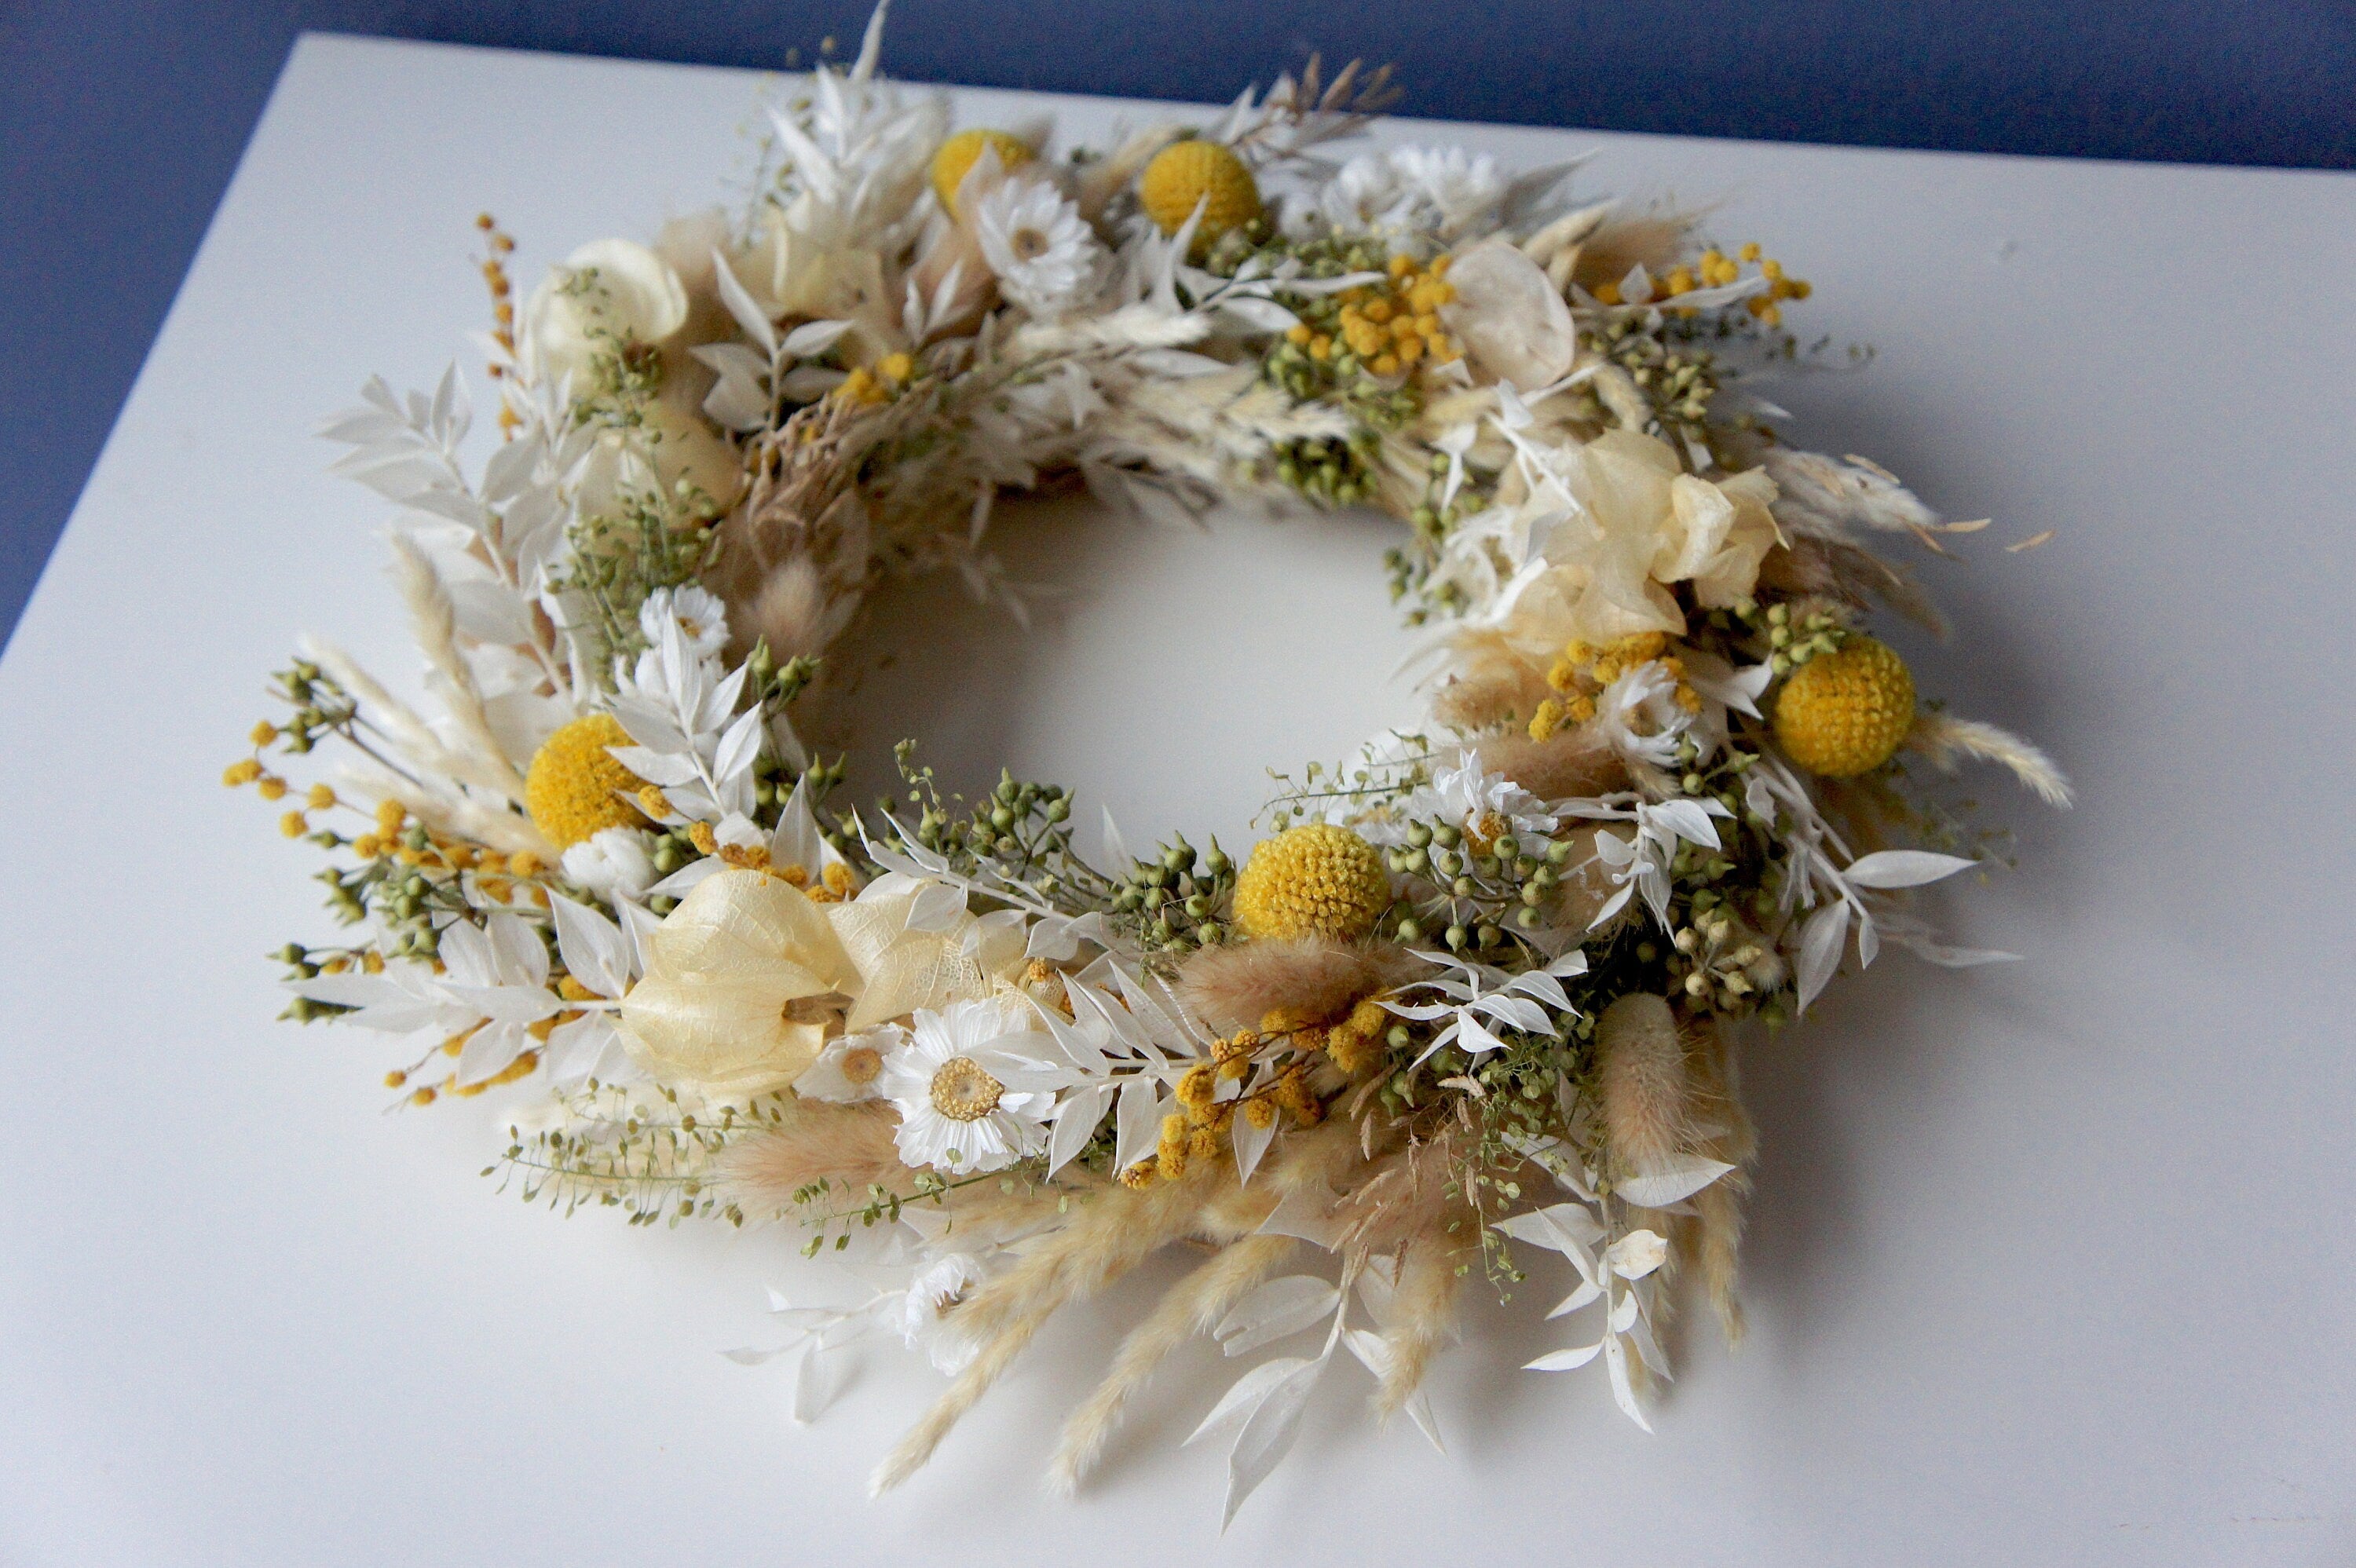 Serie HELLO SUNSHINE, Trockenblumenkranz, Dried flower wreath